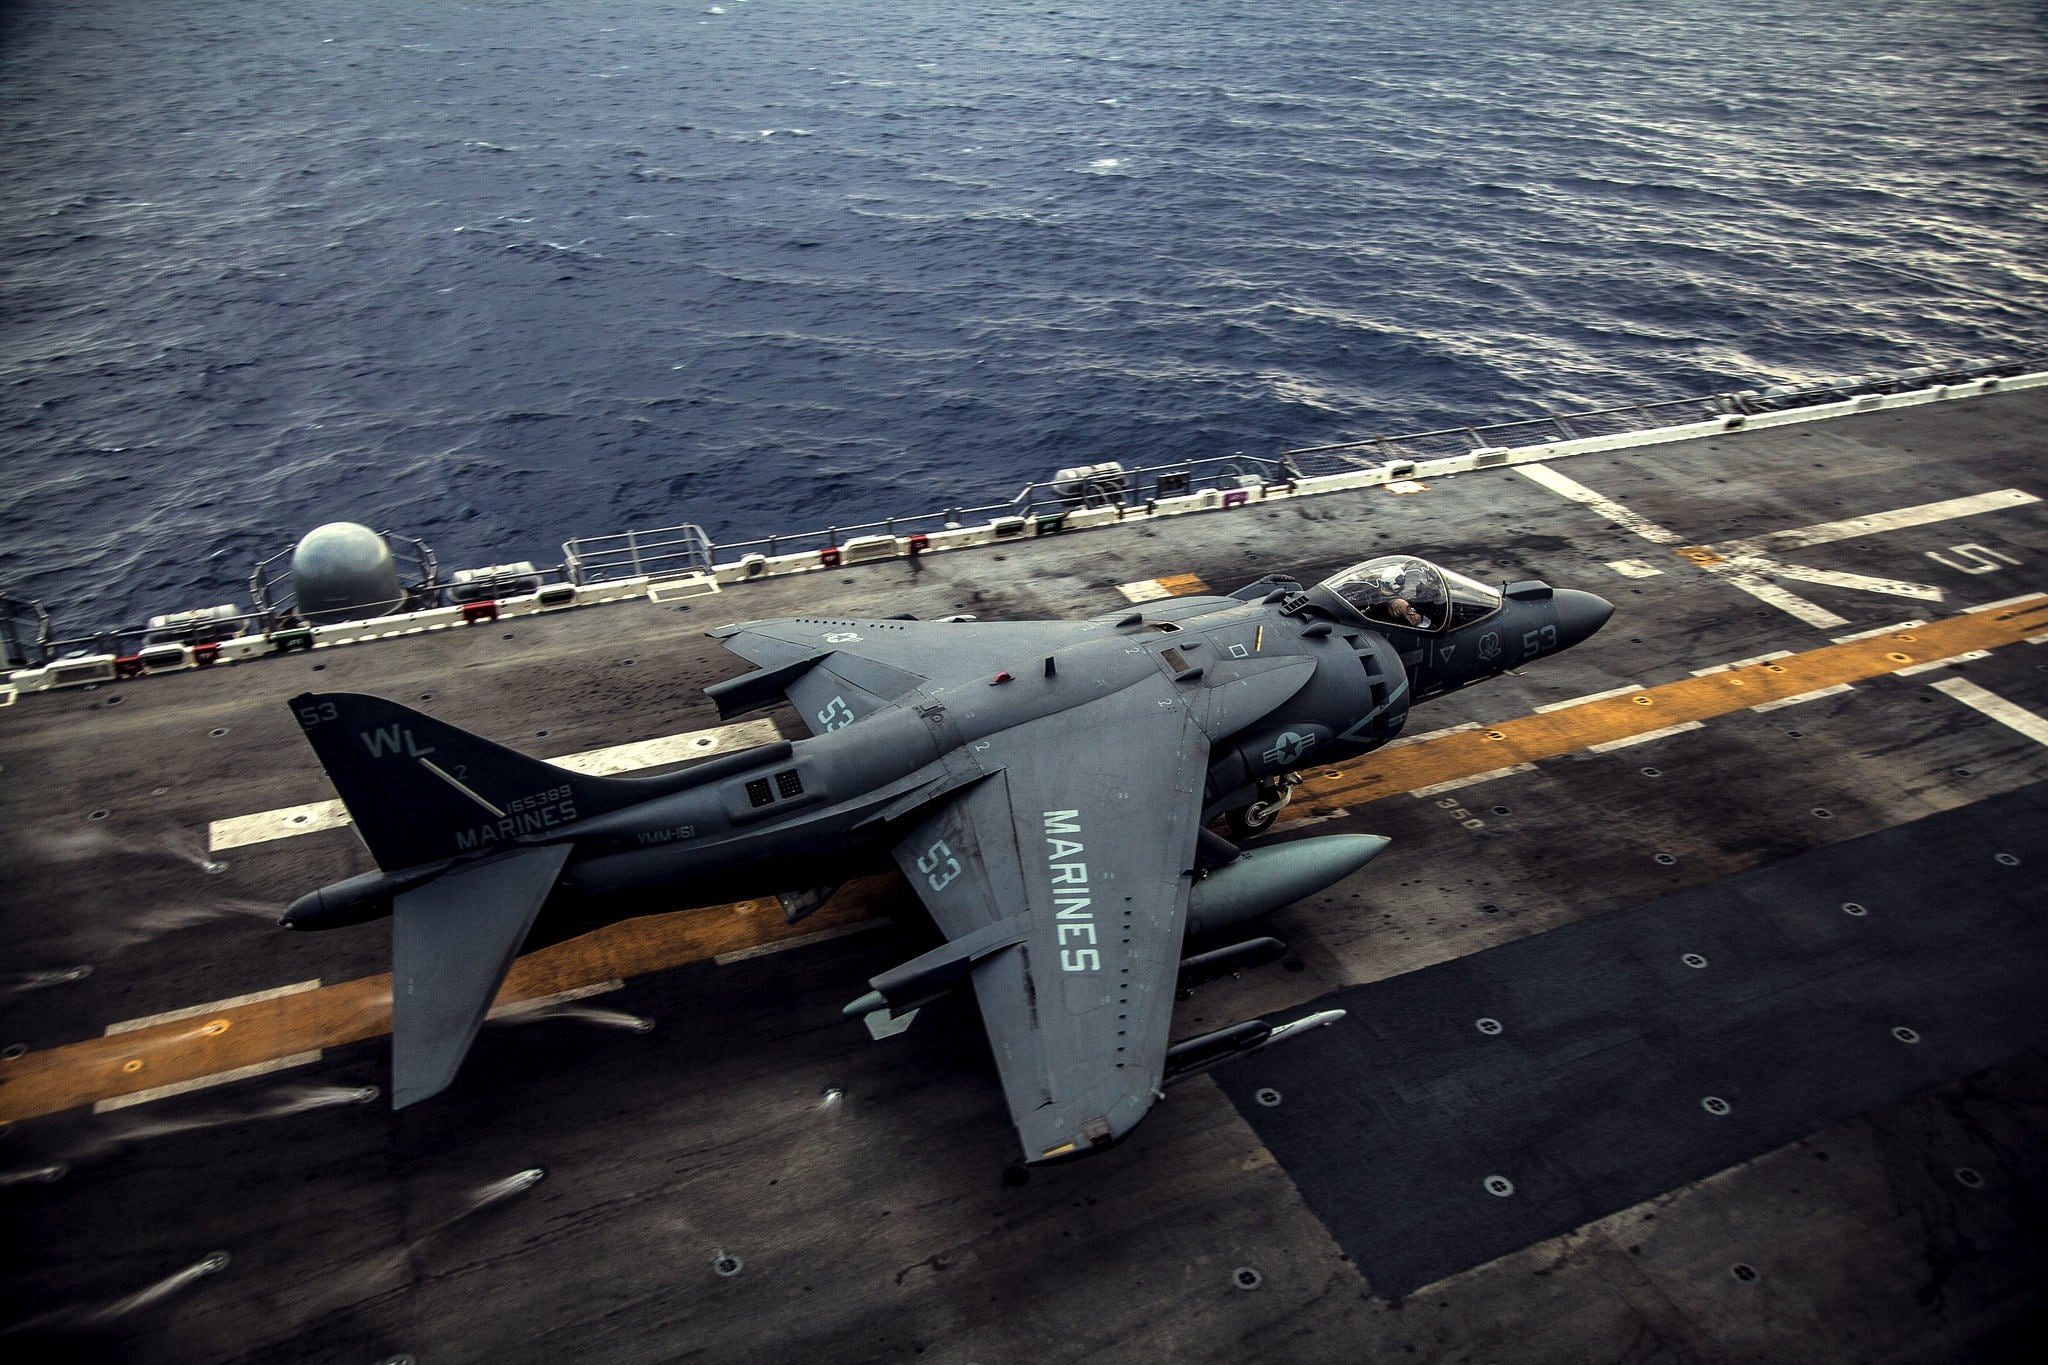 military aircraft, aircraft carrier, AV-8B Harrier II